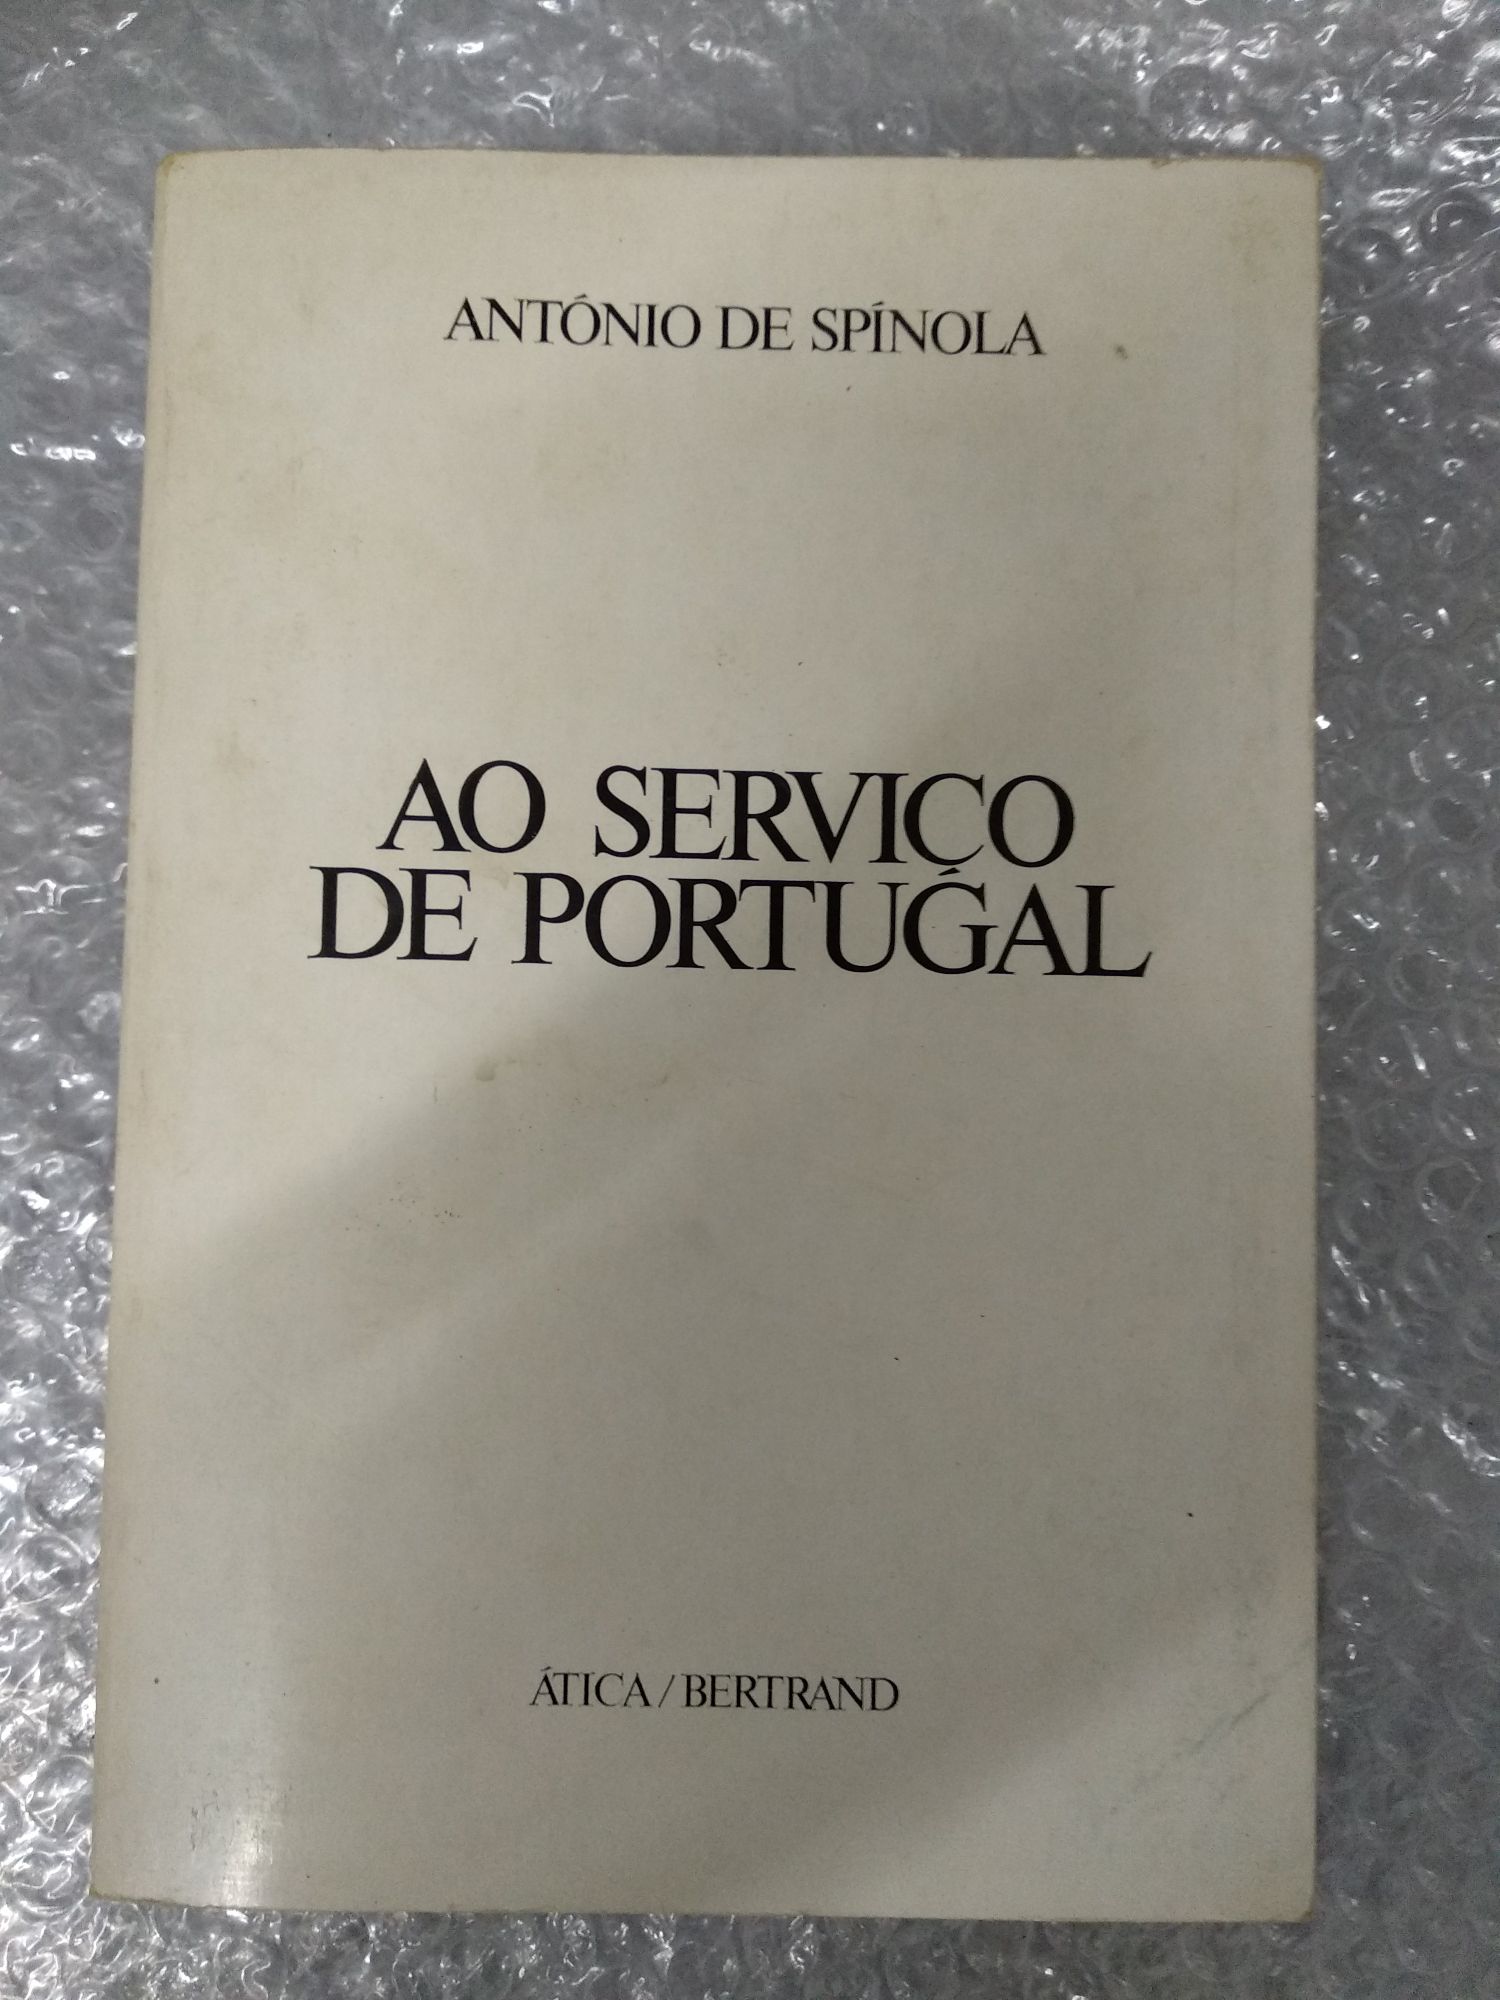 Livro "Ao serviço de Portugal" António de Spínola